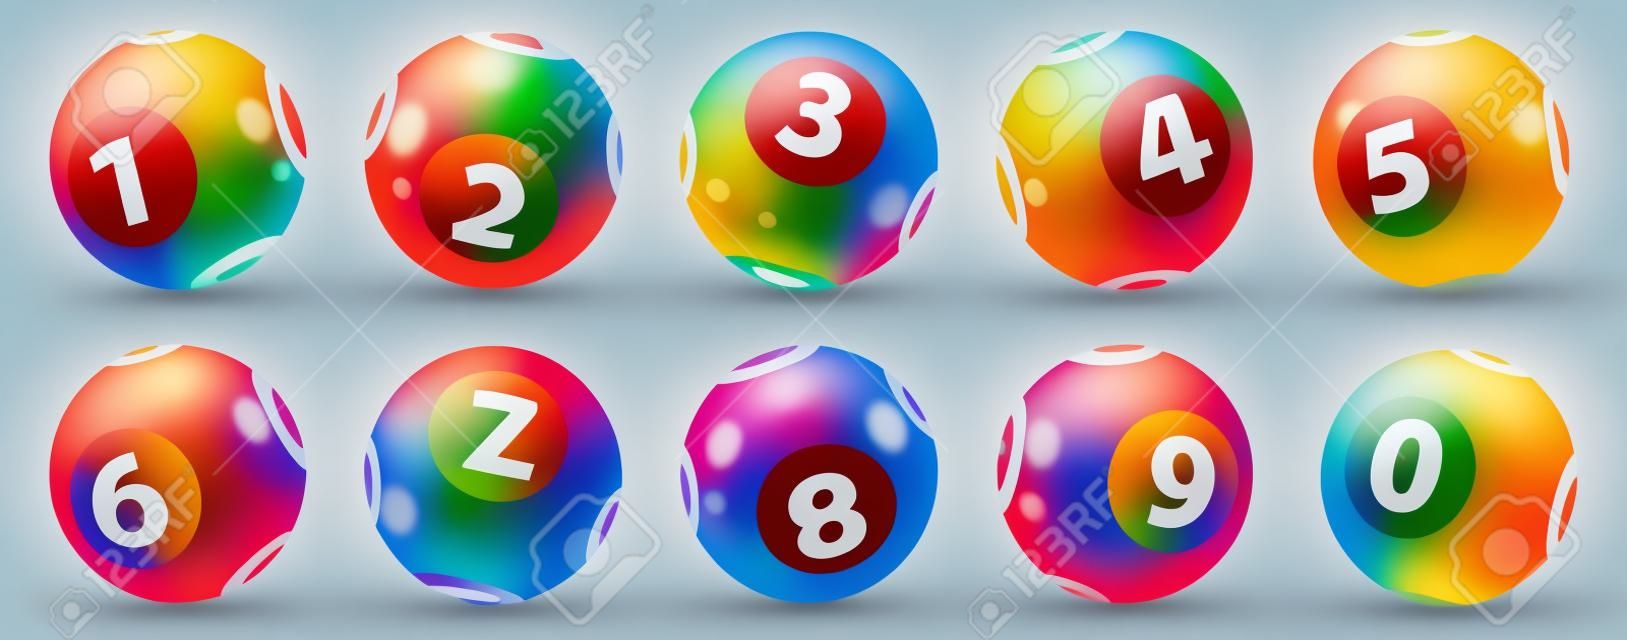 Lottery Number Balls. Farbige Kugeln isoliert. Bingo Ball. Bingo-Kugeln mit Zahlen. Satz von farbigen Kugeln. Lotto-Konzept. Bingo-Kugeln festgelegt.